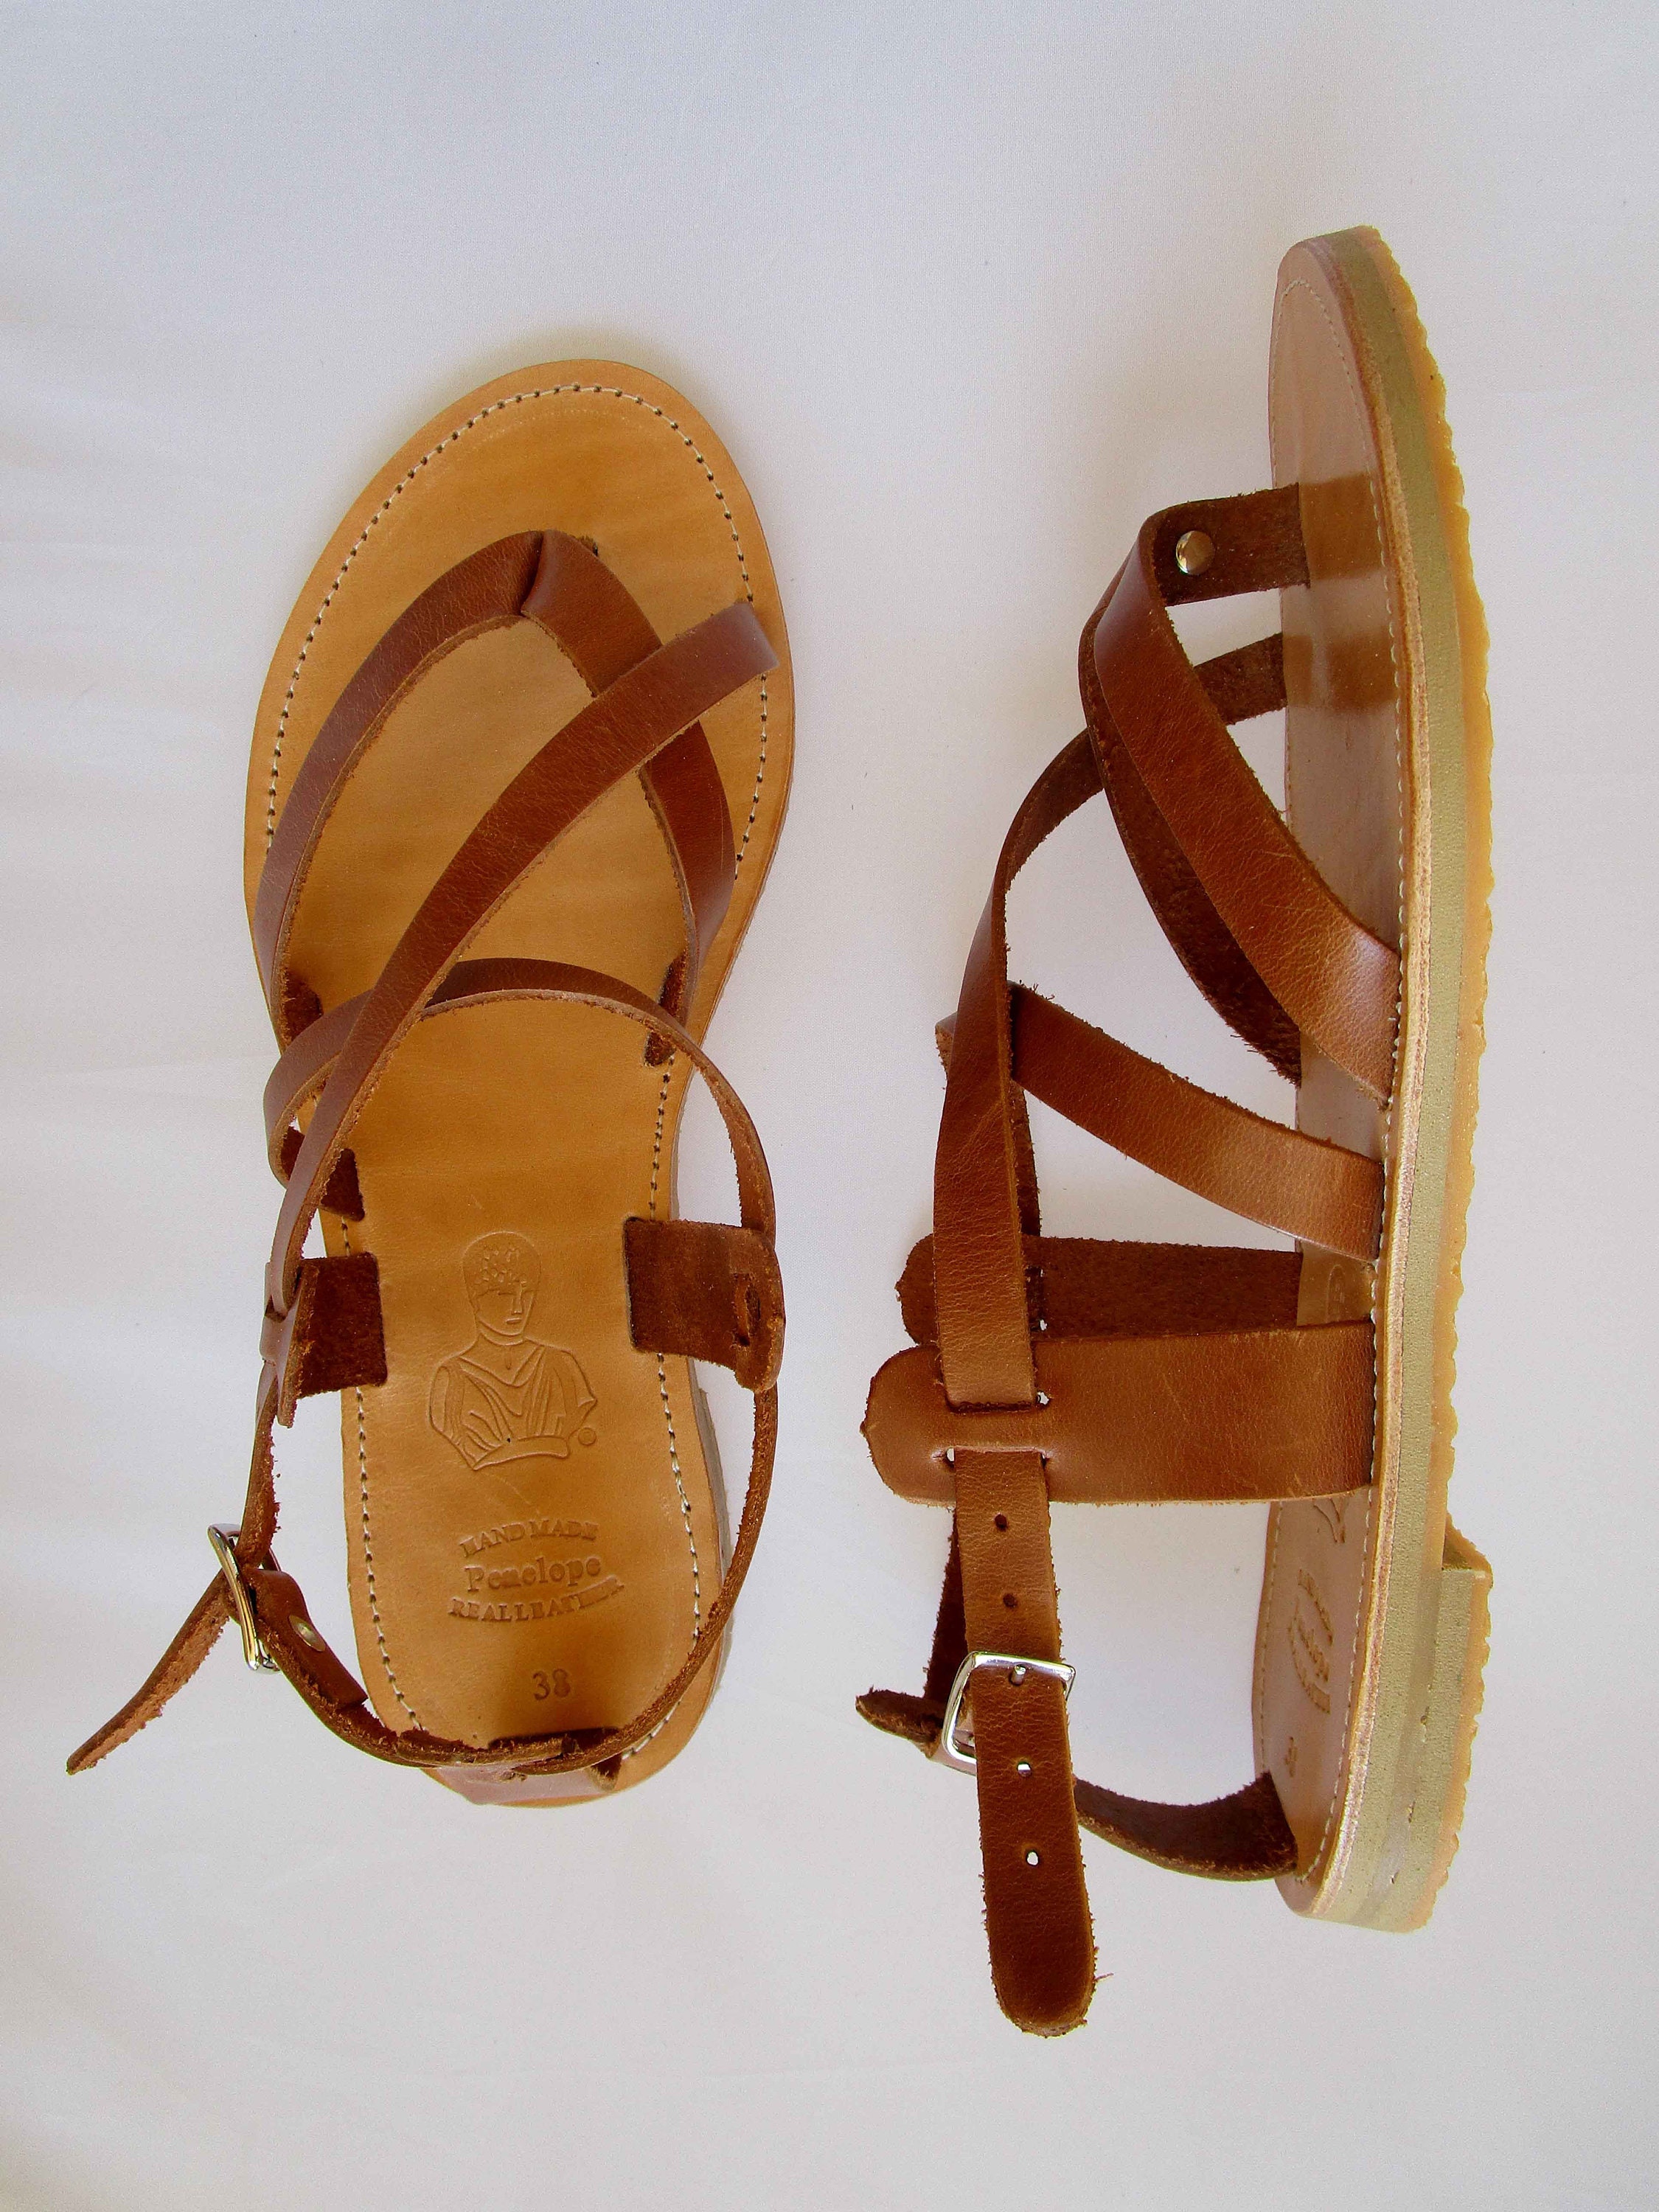 Leather sandals Sandals Greek sandals Leather sandals | Etsy